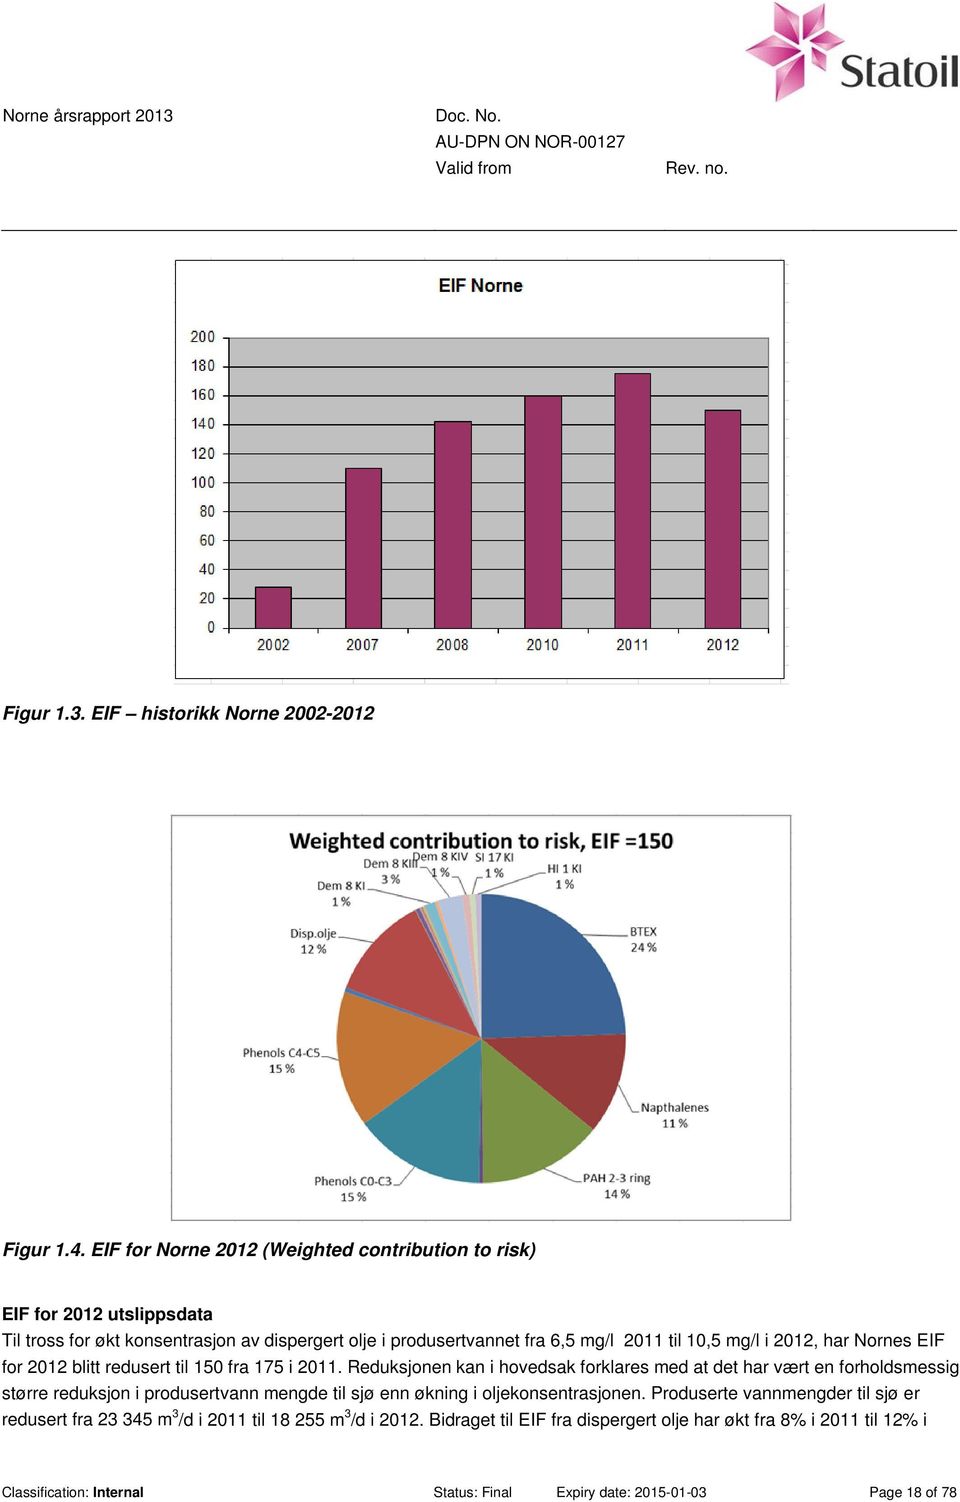 mg/l i 2012, har Nornes EIF for 2012 blitt redusert til 150 fra 175 i 2011.